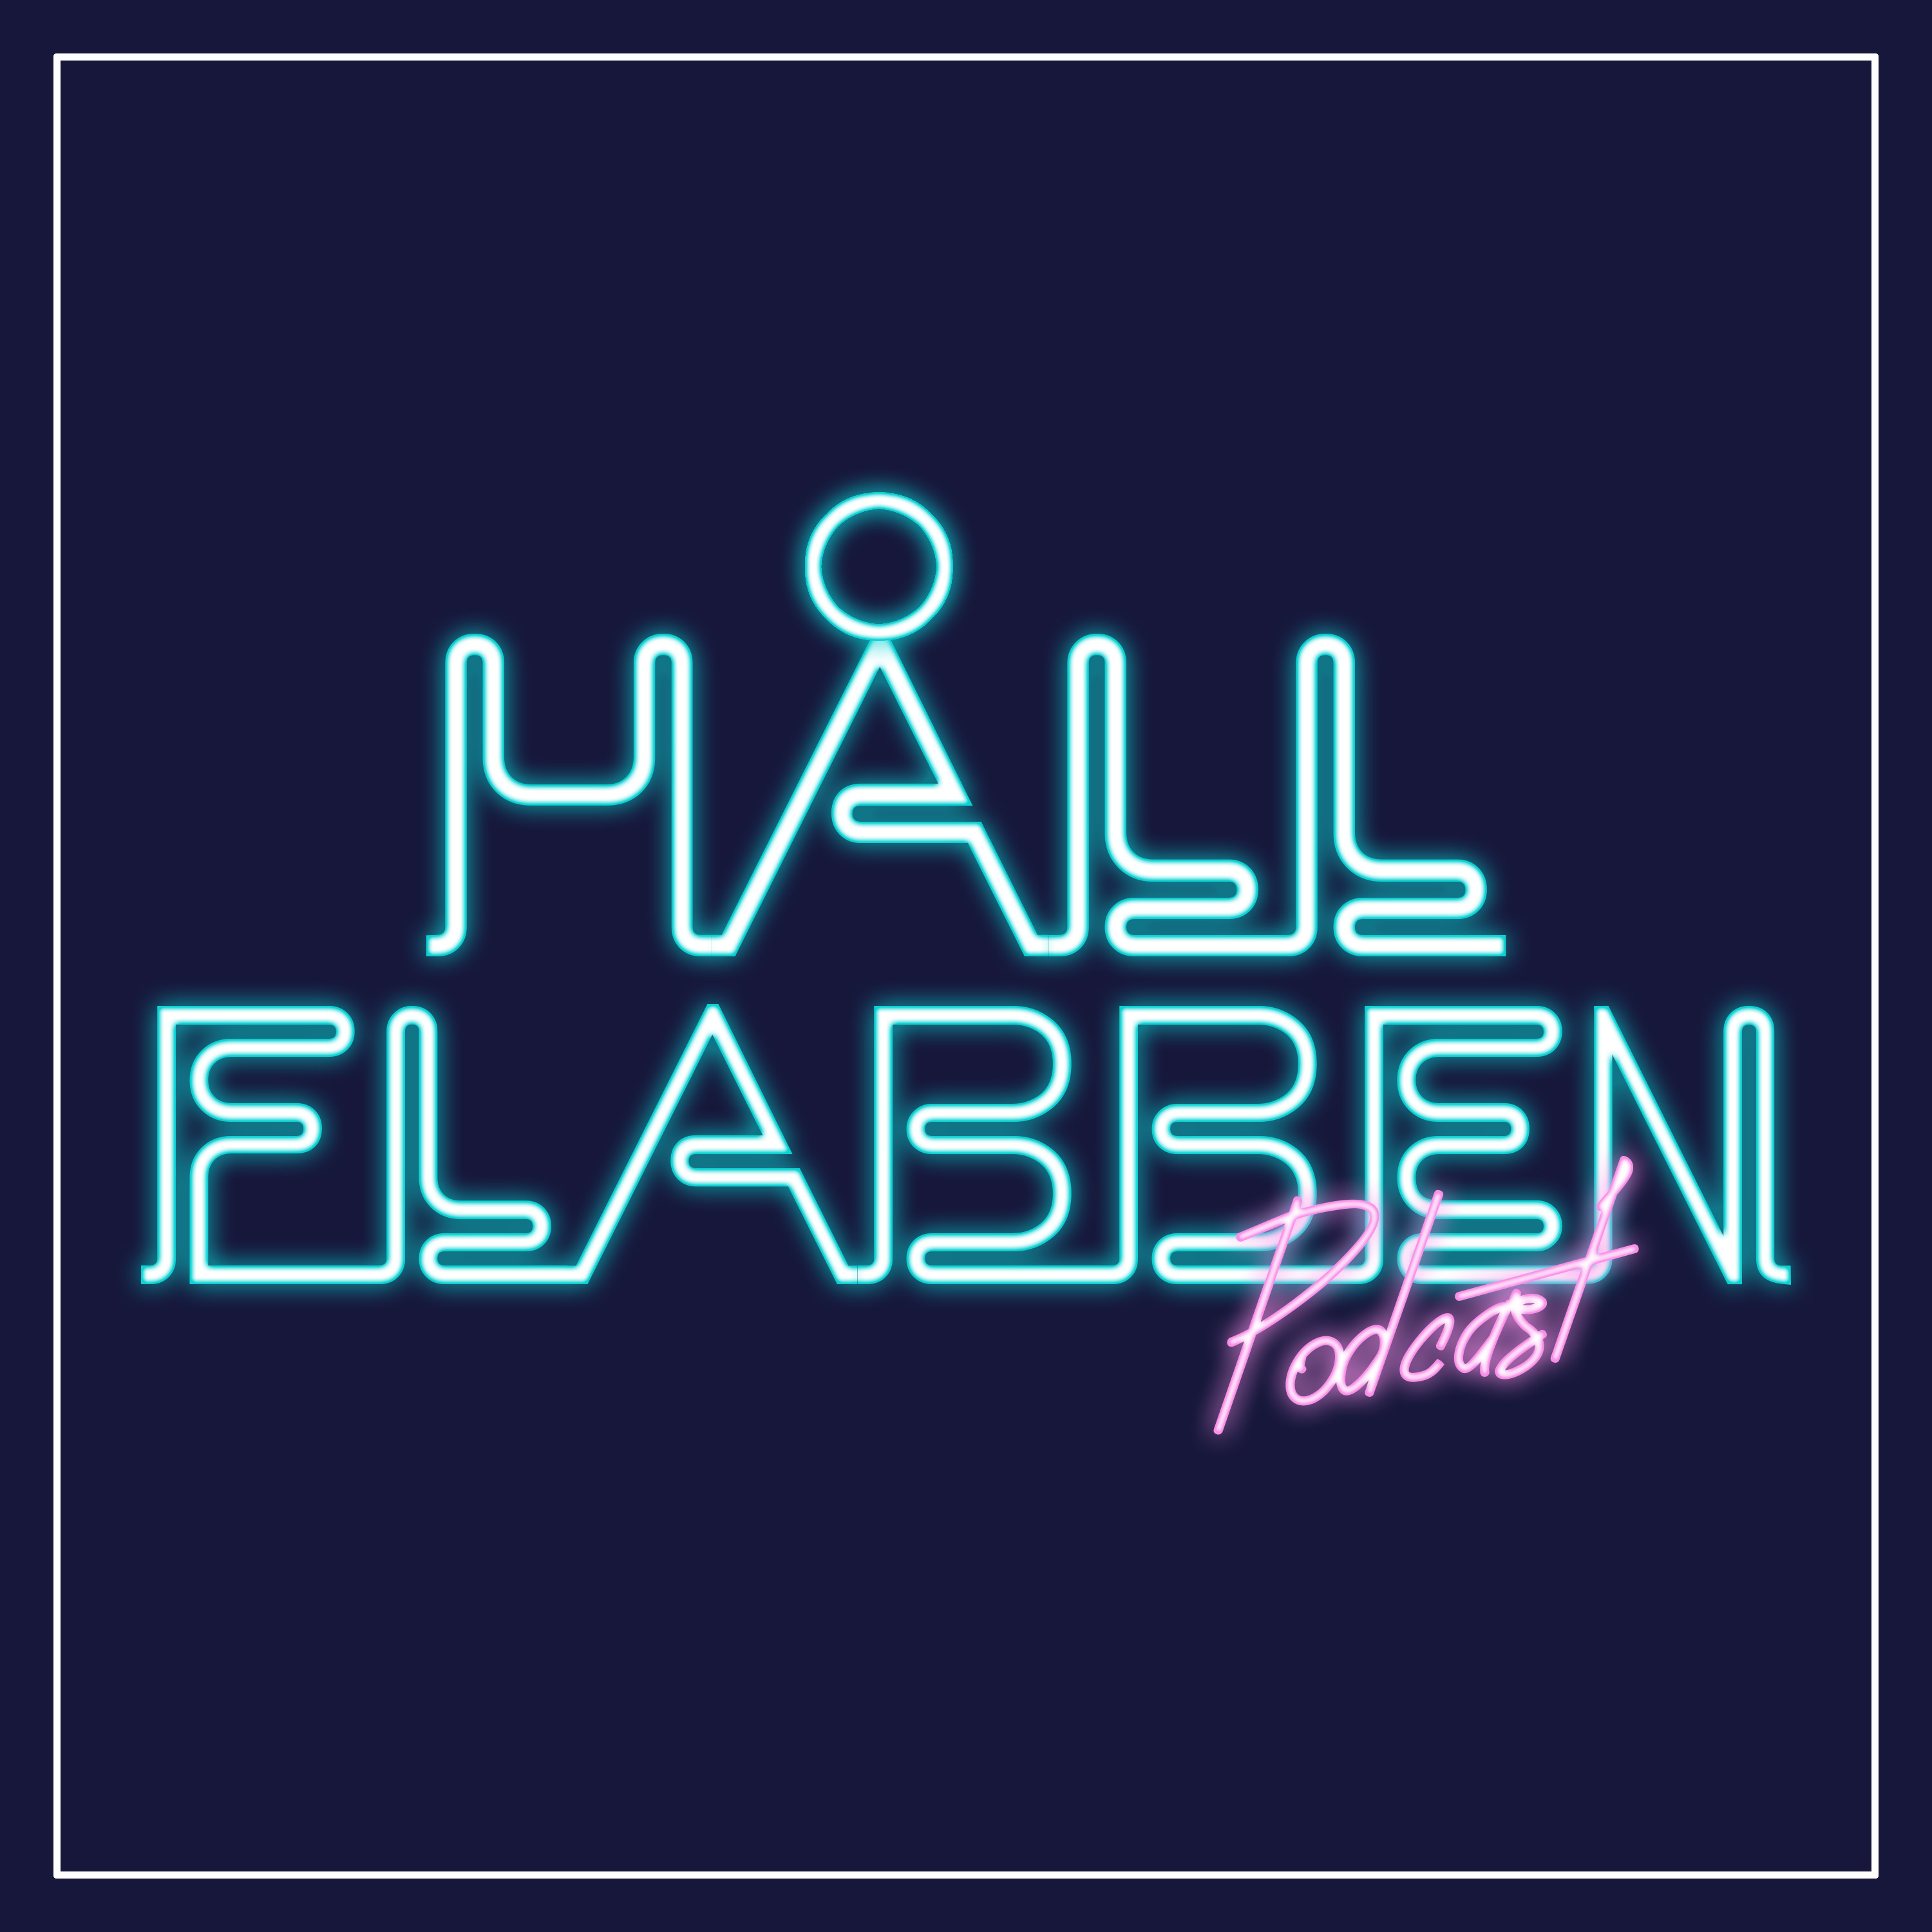 Håll Flabben Podcast